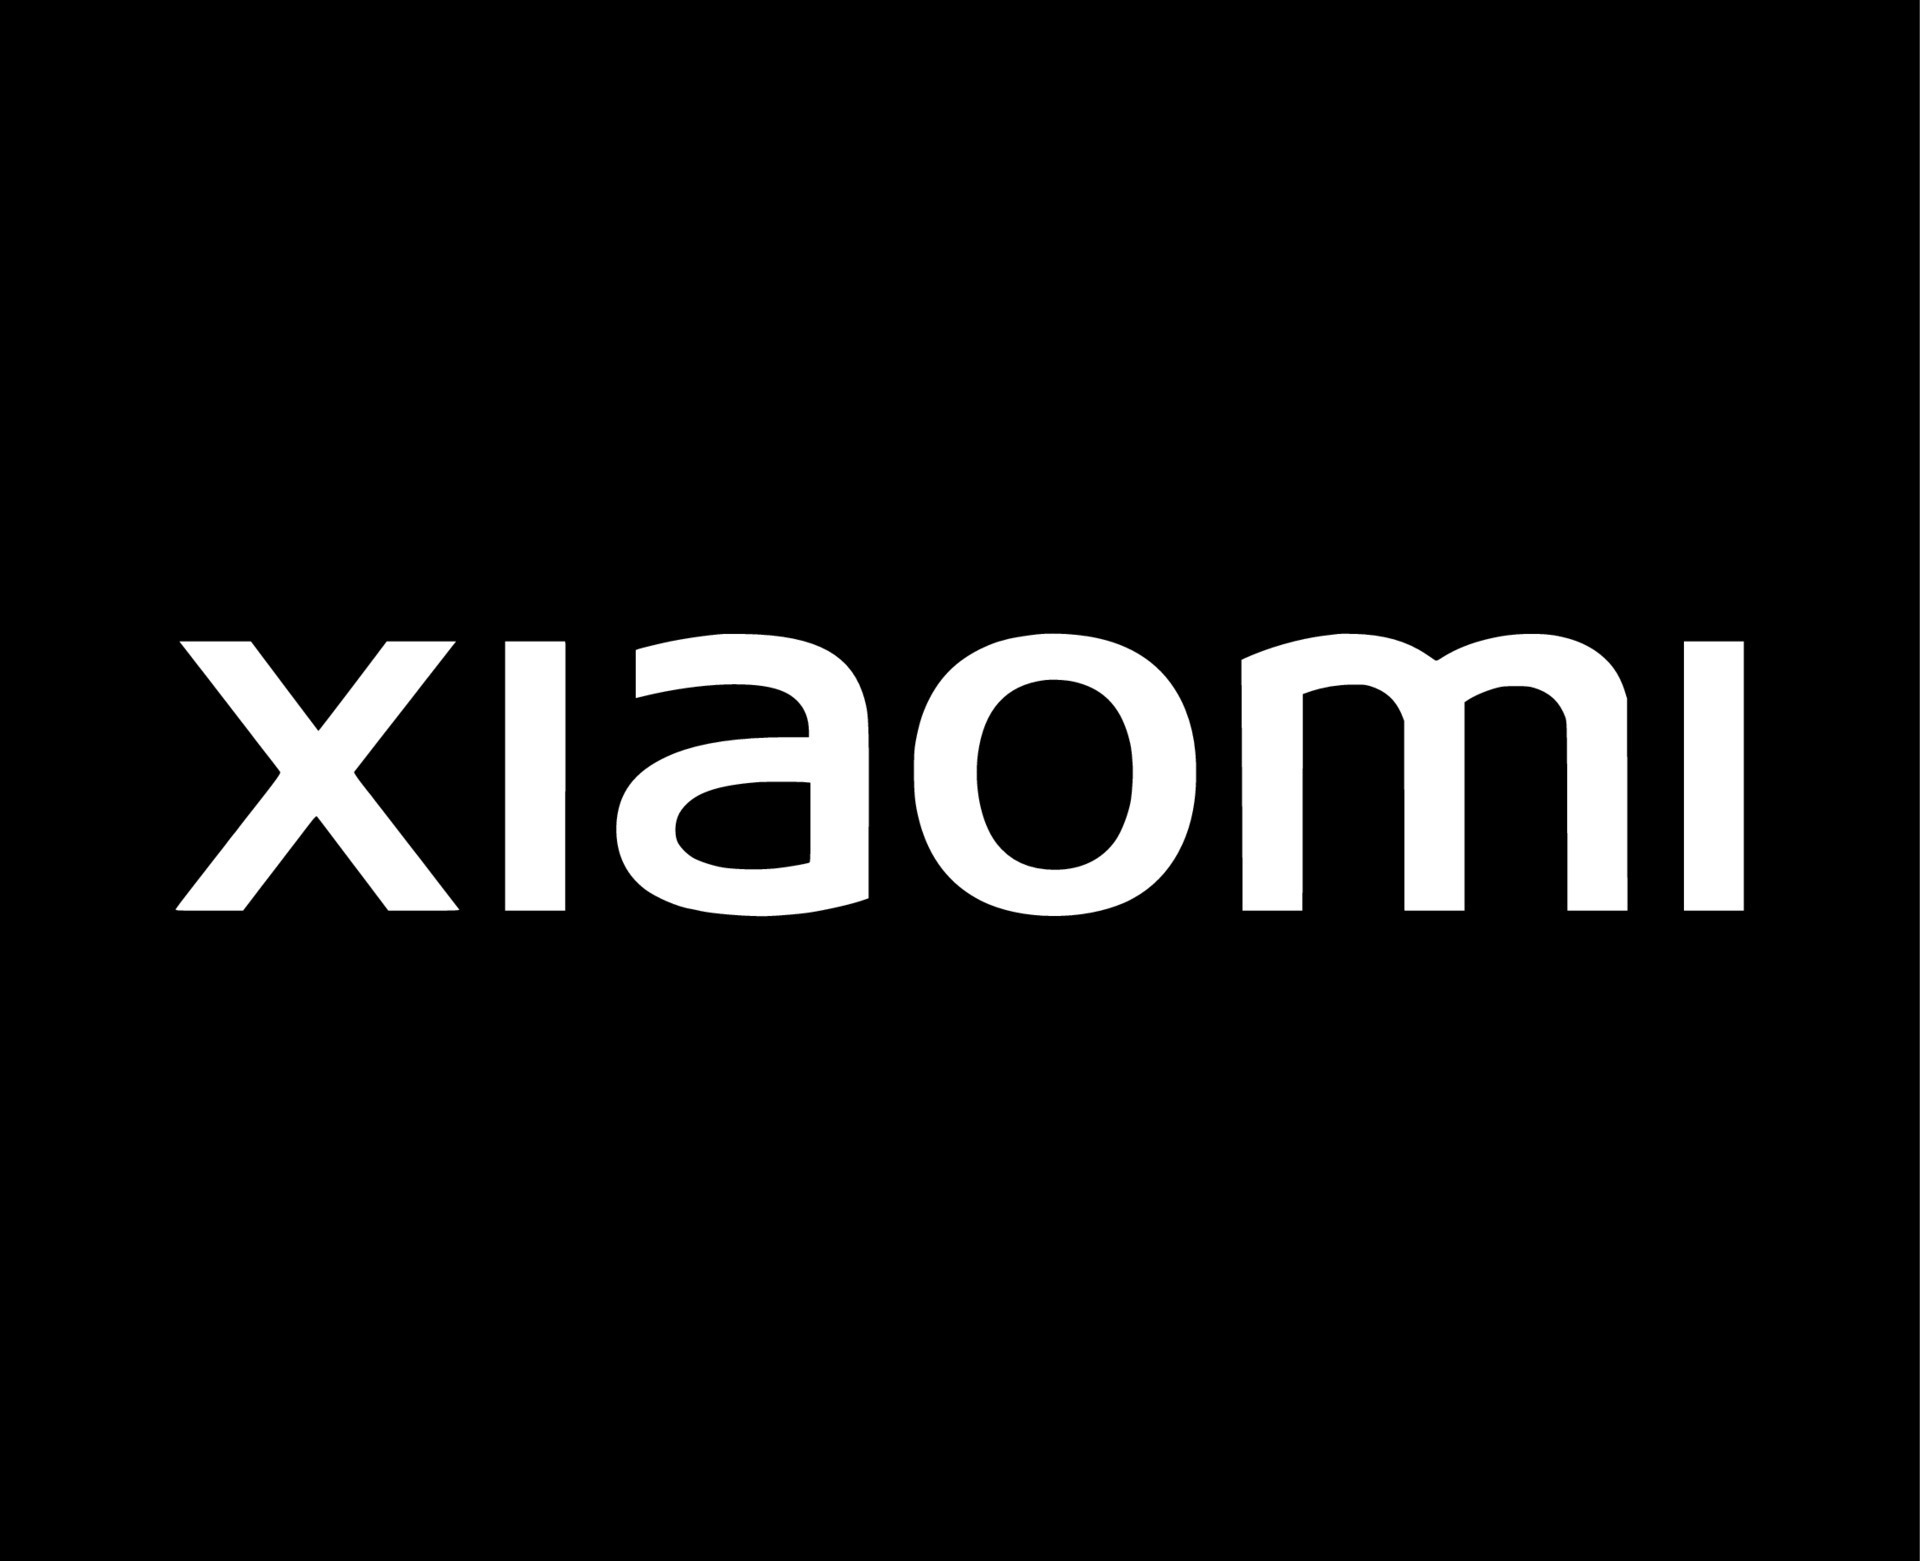 Tải 500 Xiaomi logo black background đen, chất lượng HD